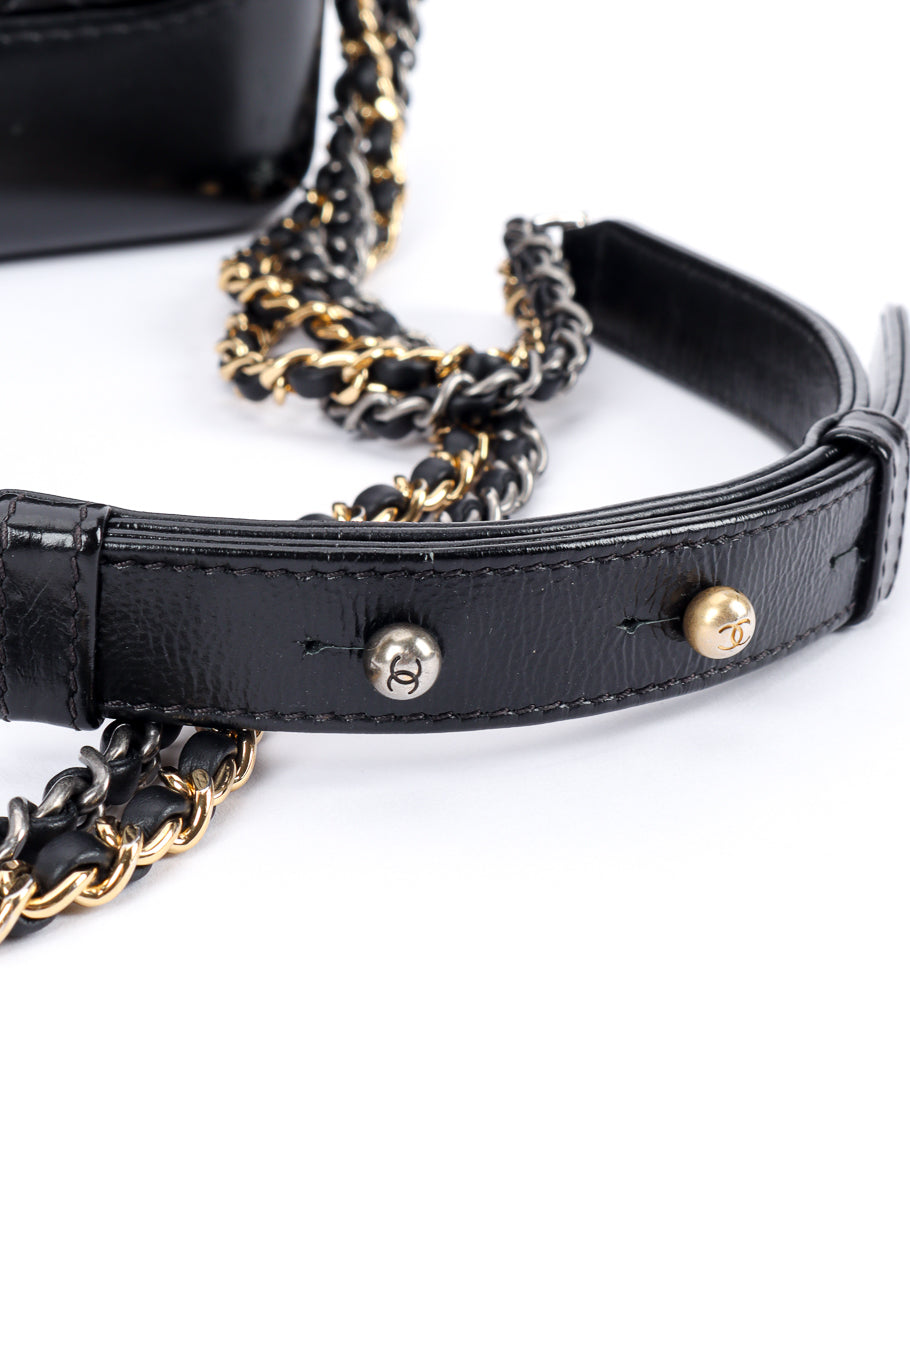 Chanel 2019 Gabrielle Crossbody adjustable strap @recessla